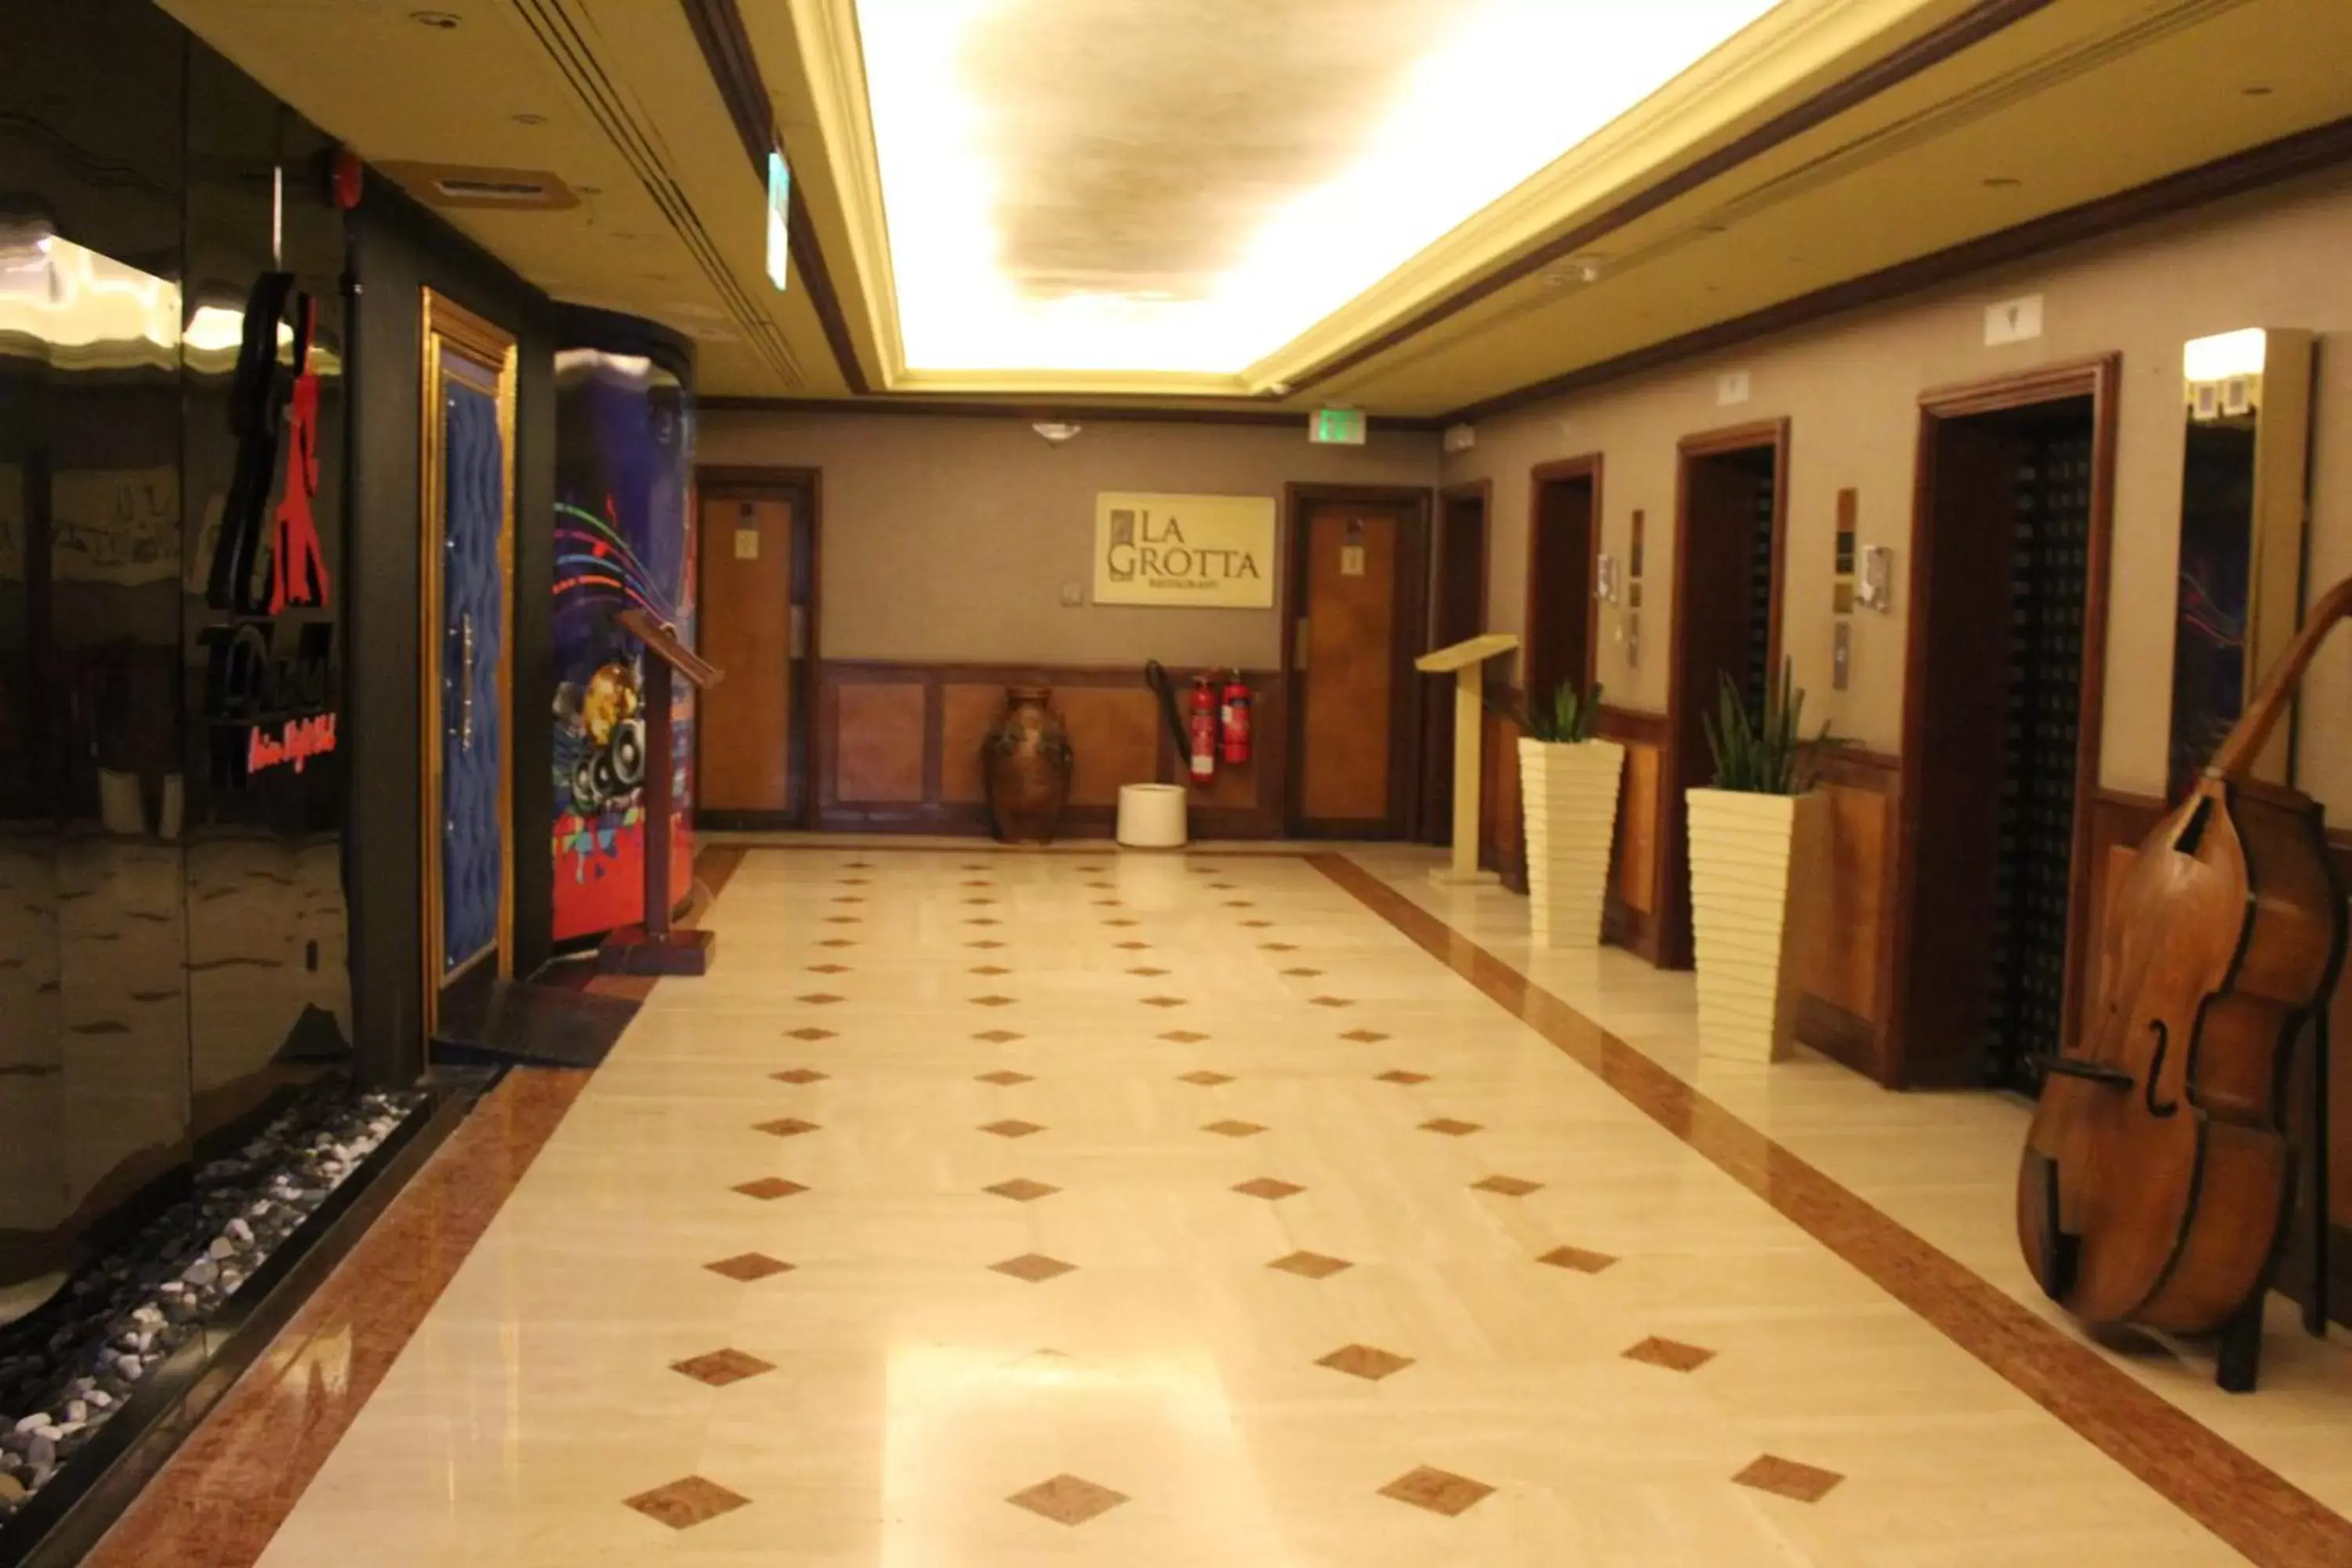 Lobby or reception in Al Khaleej Palace Deira Hotel